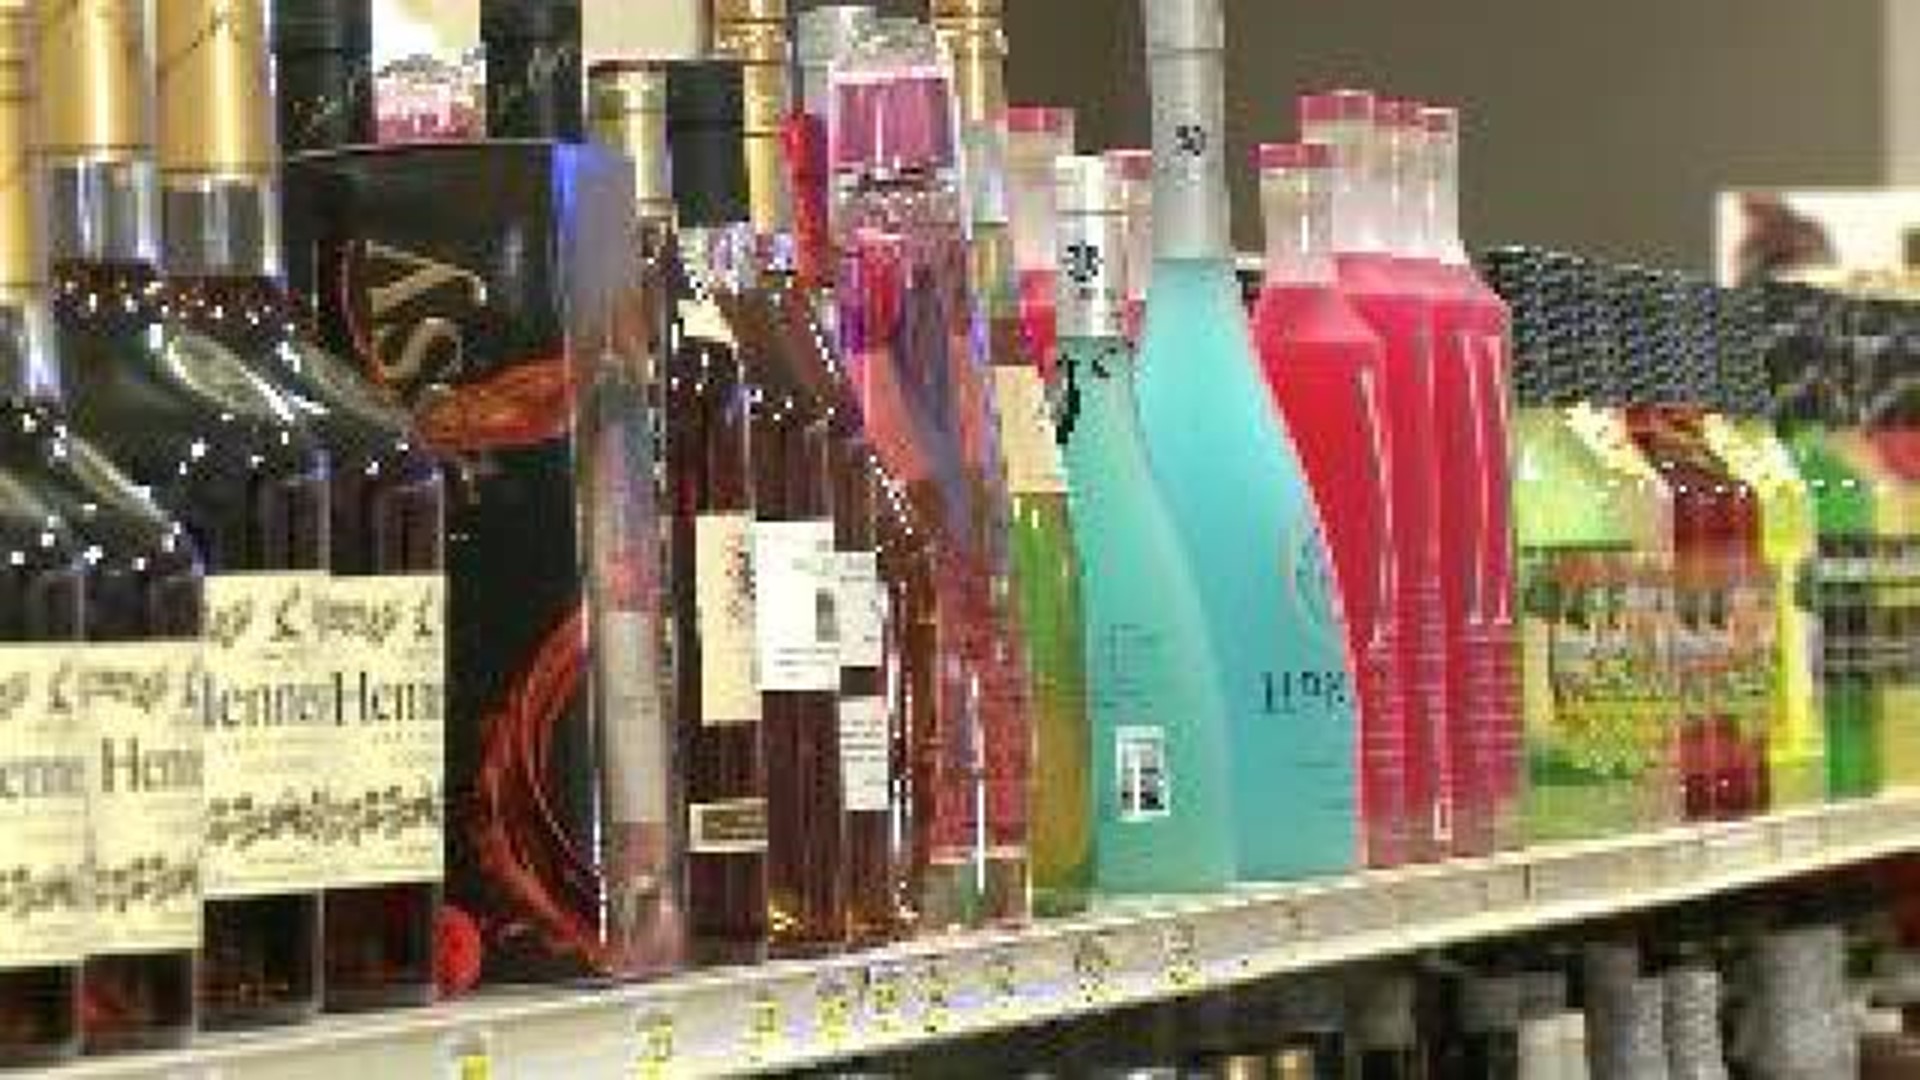 Redevelopment Group Intervenes in Barling Liquor Debate